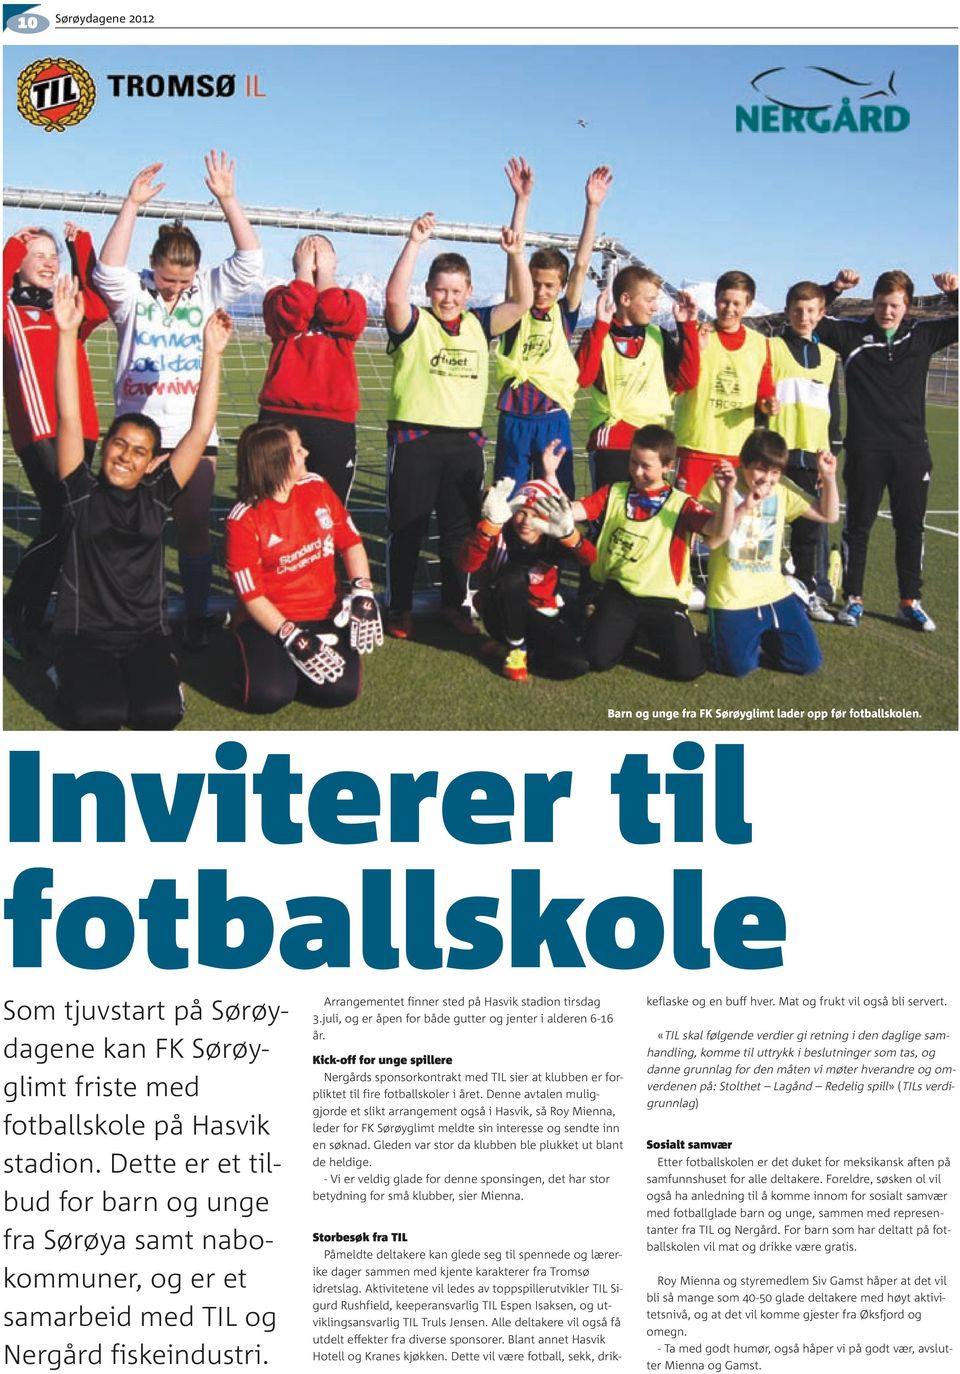 juli, og er åpen for både gutter og jenter i alderen 6-16 år. Kick-off for unge spillere Nergårds sponsorkontrakt med TIL sier at klubben er forpliktet til fire fotballskoler i året.